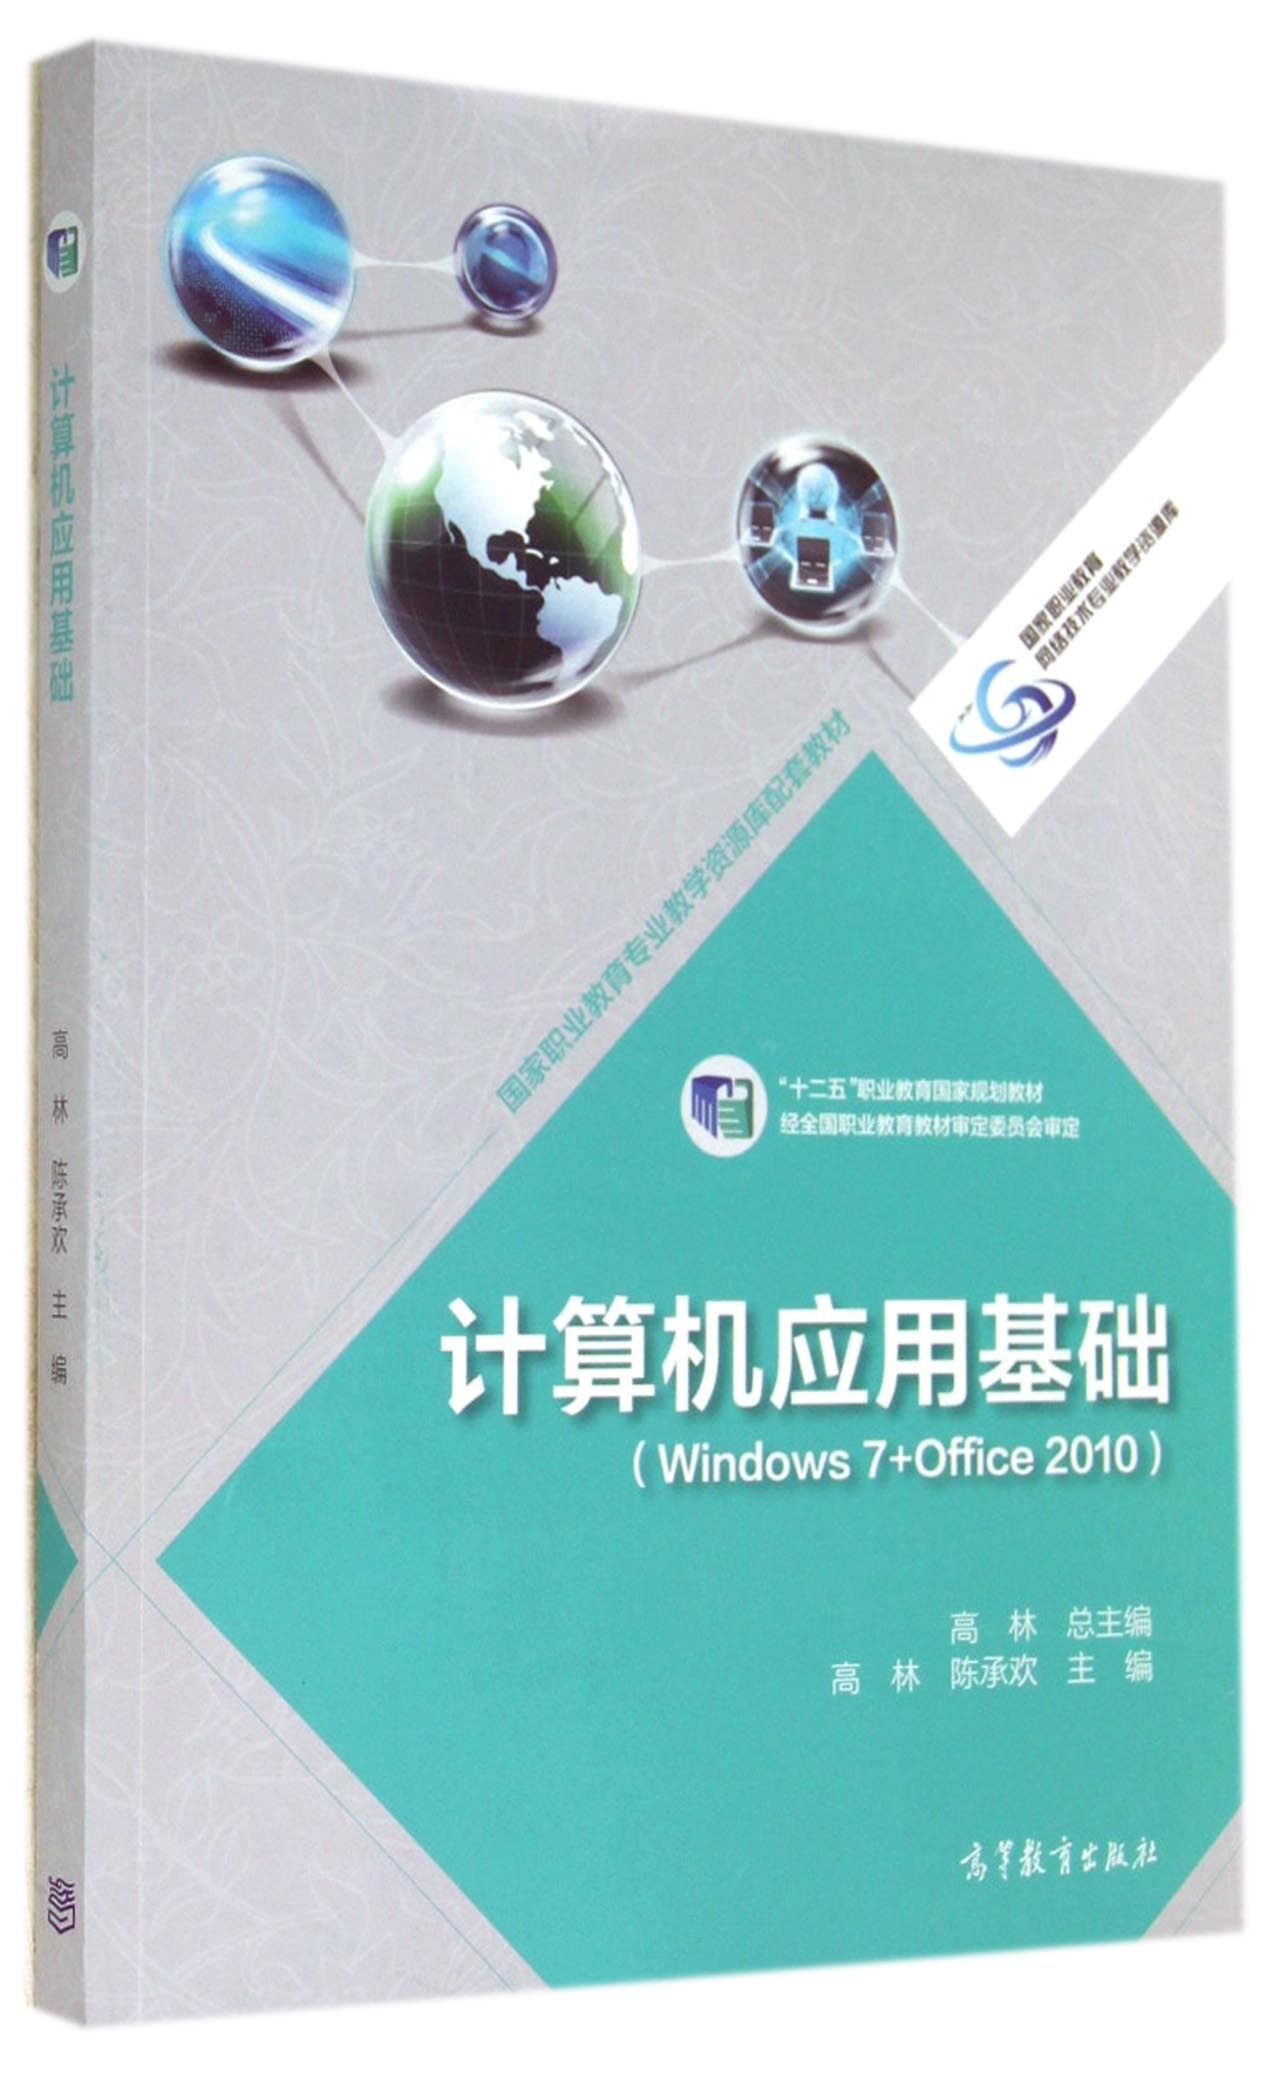 計算機套用基礎(2014年高等教育出版社出版的圖書)